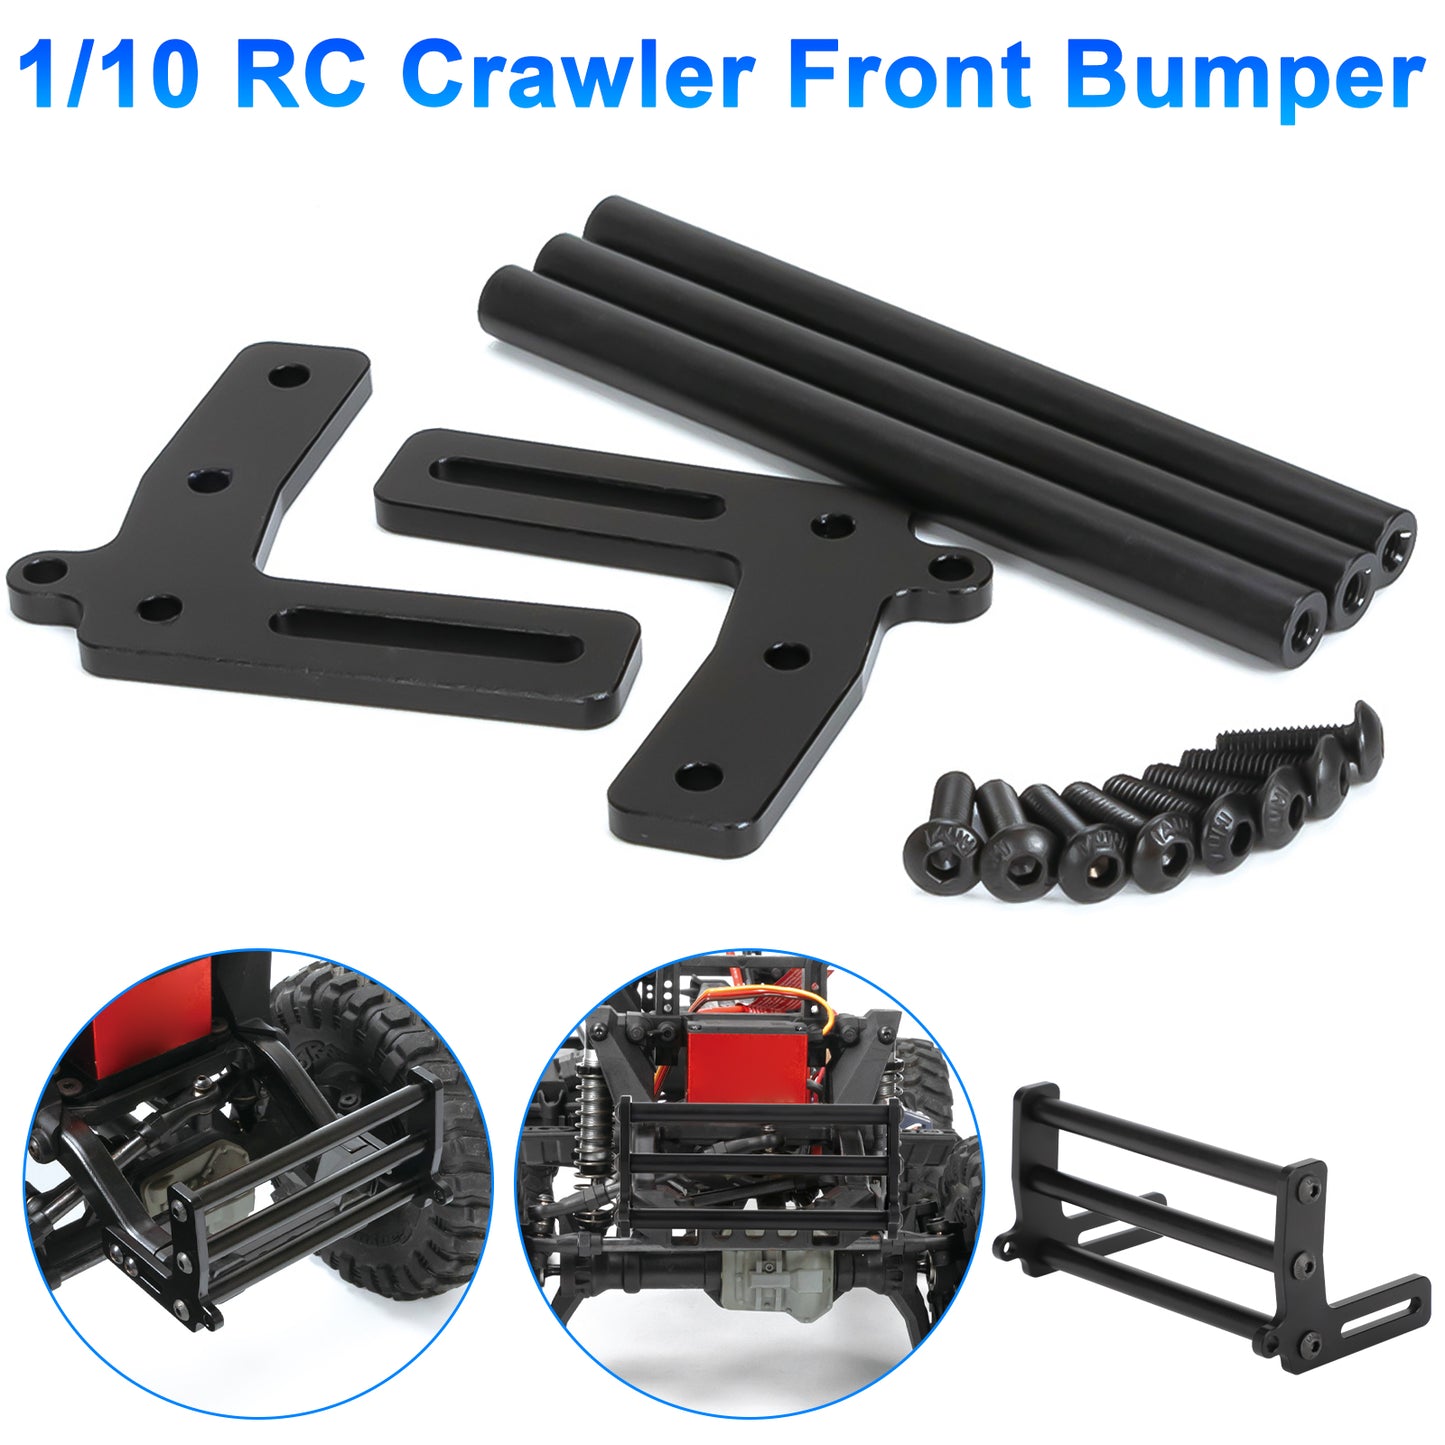 Aluminum Front Bumper Bull Bars for 1/10 RC Crawler Traxxas TRX4 Axial SCX10